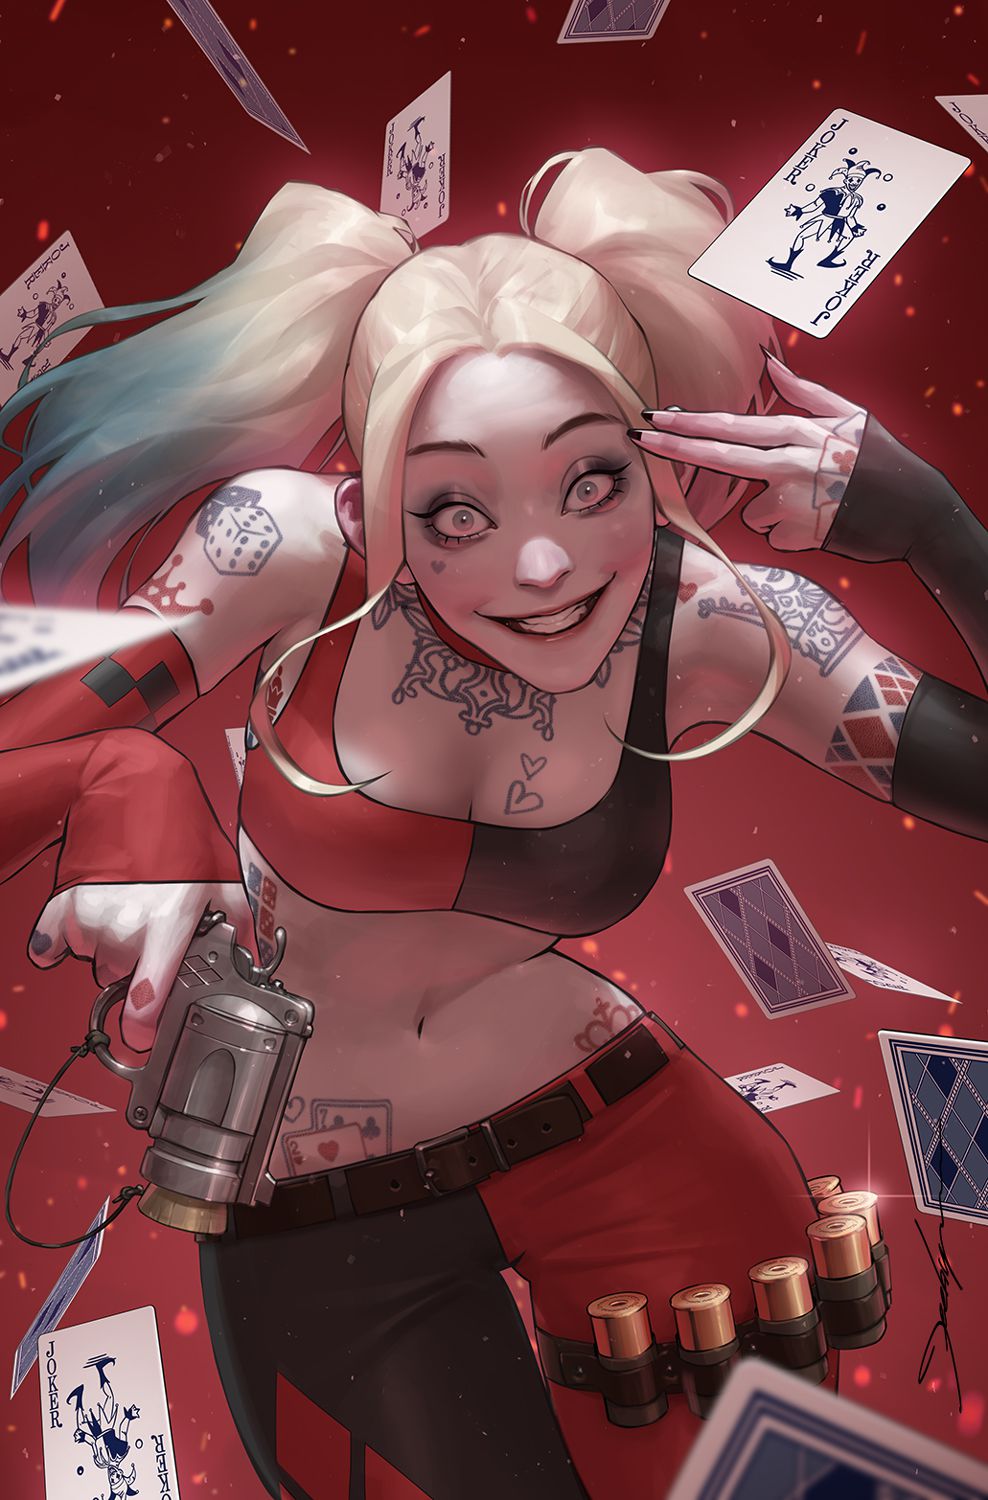 Harley Quinn prend une pose dérangée, entourée d'un nuage de cartes à jouer qui tombent, sur une variante de couverture de Gotham City Sirens.